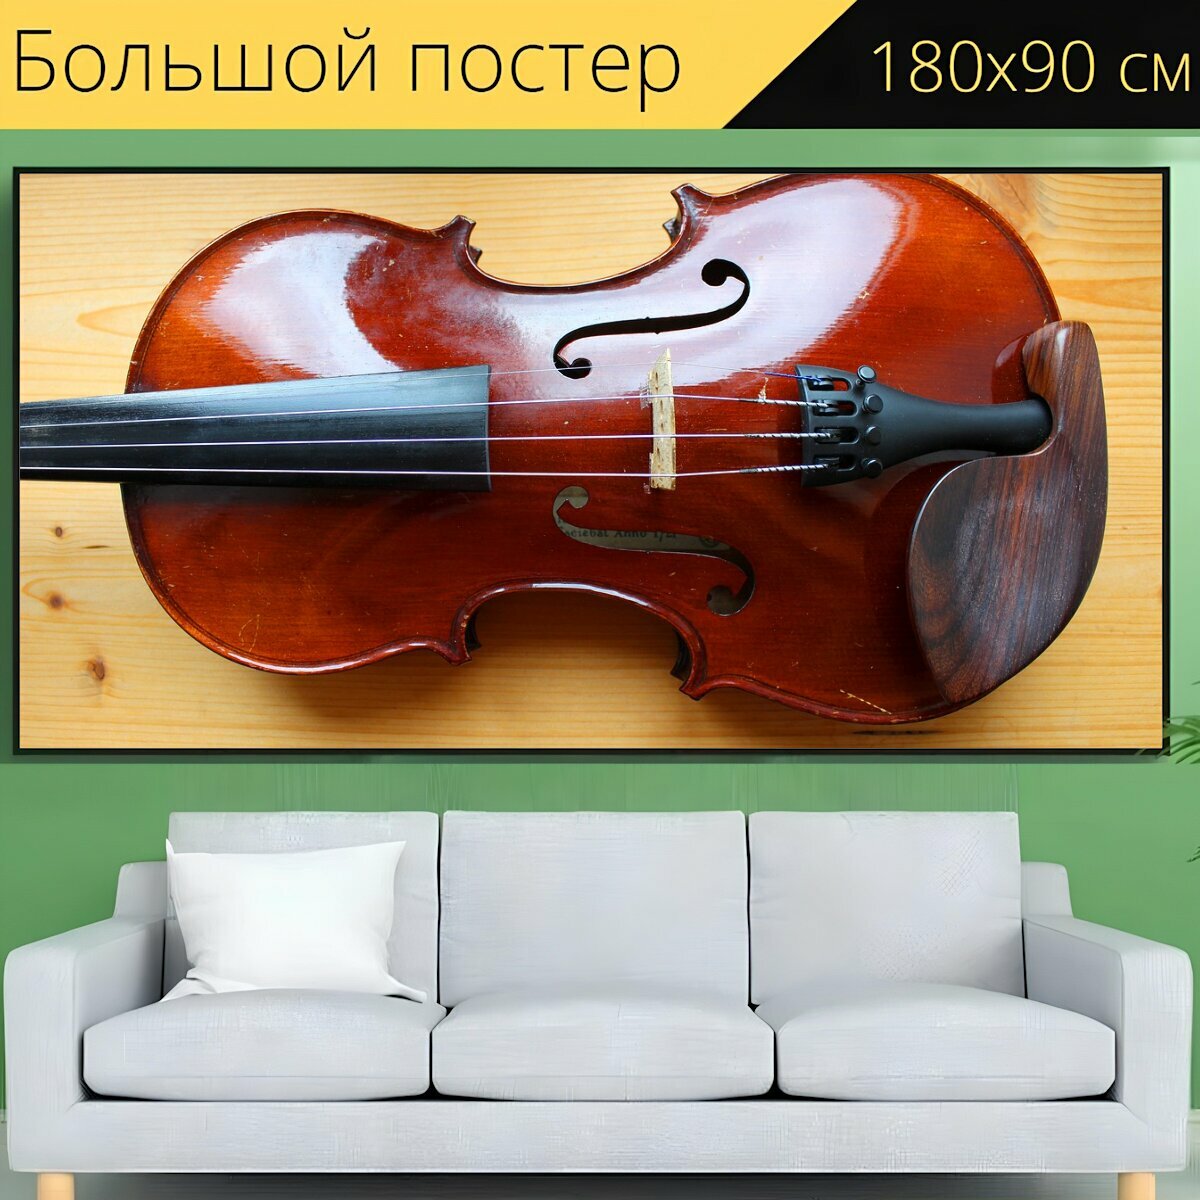 Большой постер "Скрипка, инструмент, музыкальный инструмент" 180 x 90 см. для интерьера